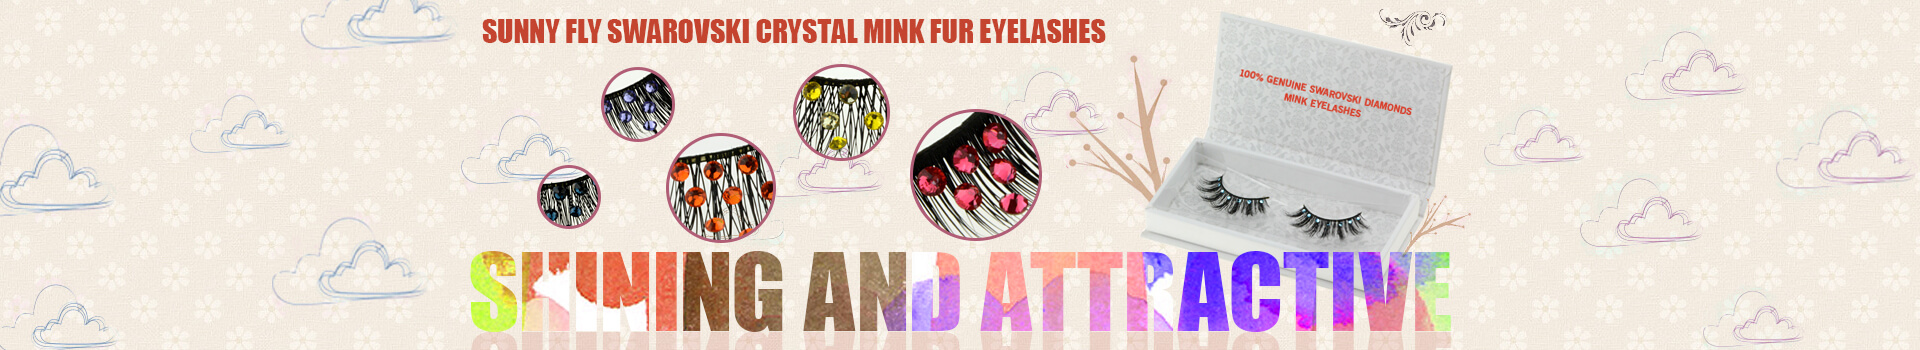 Swarovski Crystal Mink Fur Eyelashes MS22